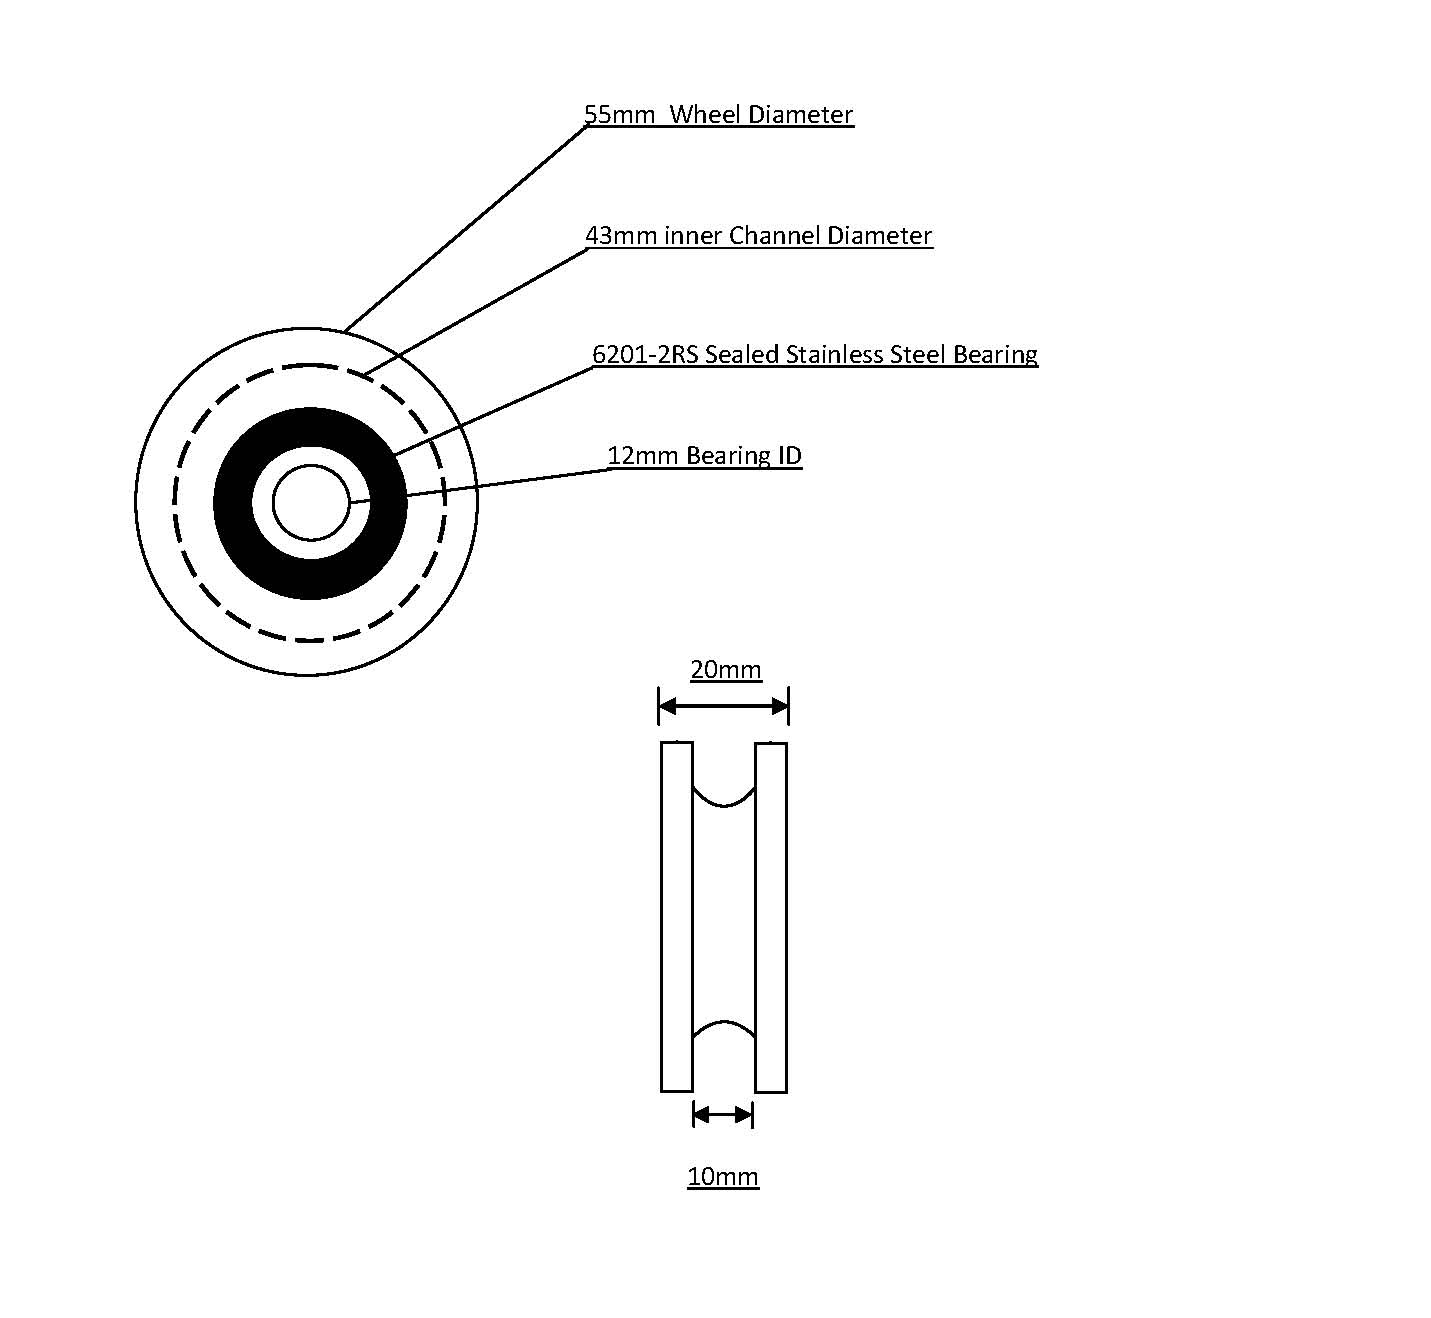 55mm Delrin Wheel, Bearing and Circlip 12mm ID Bearing